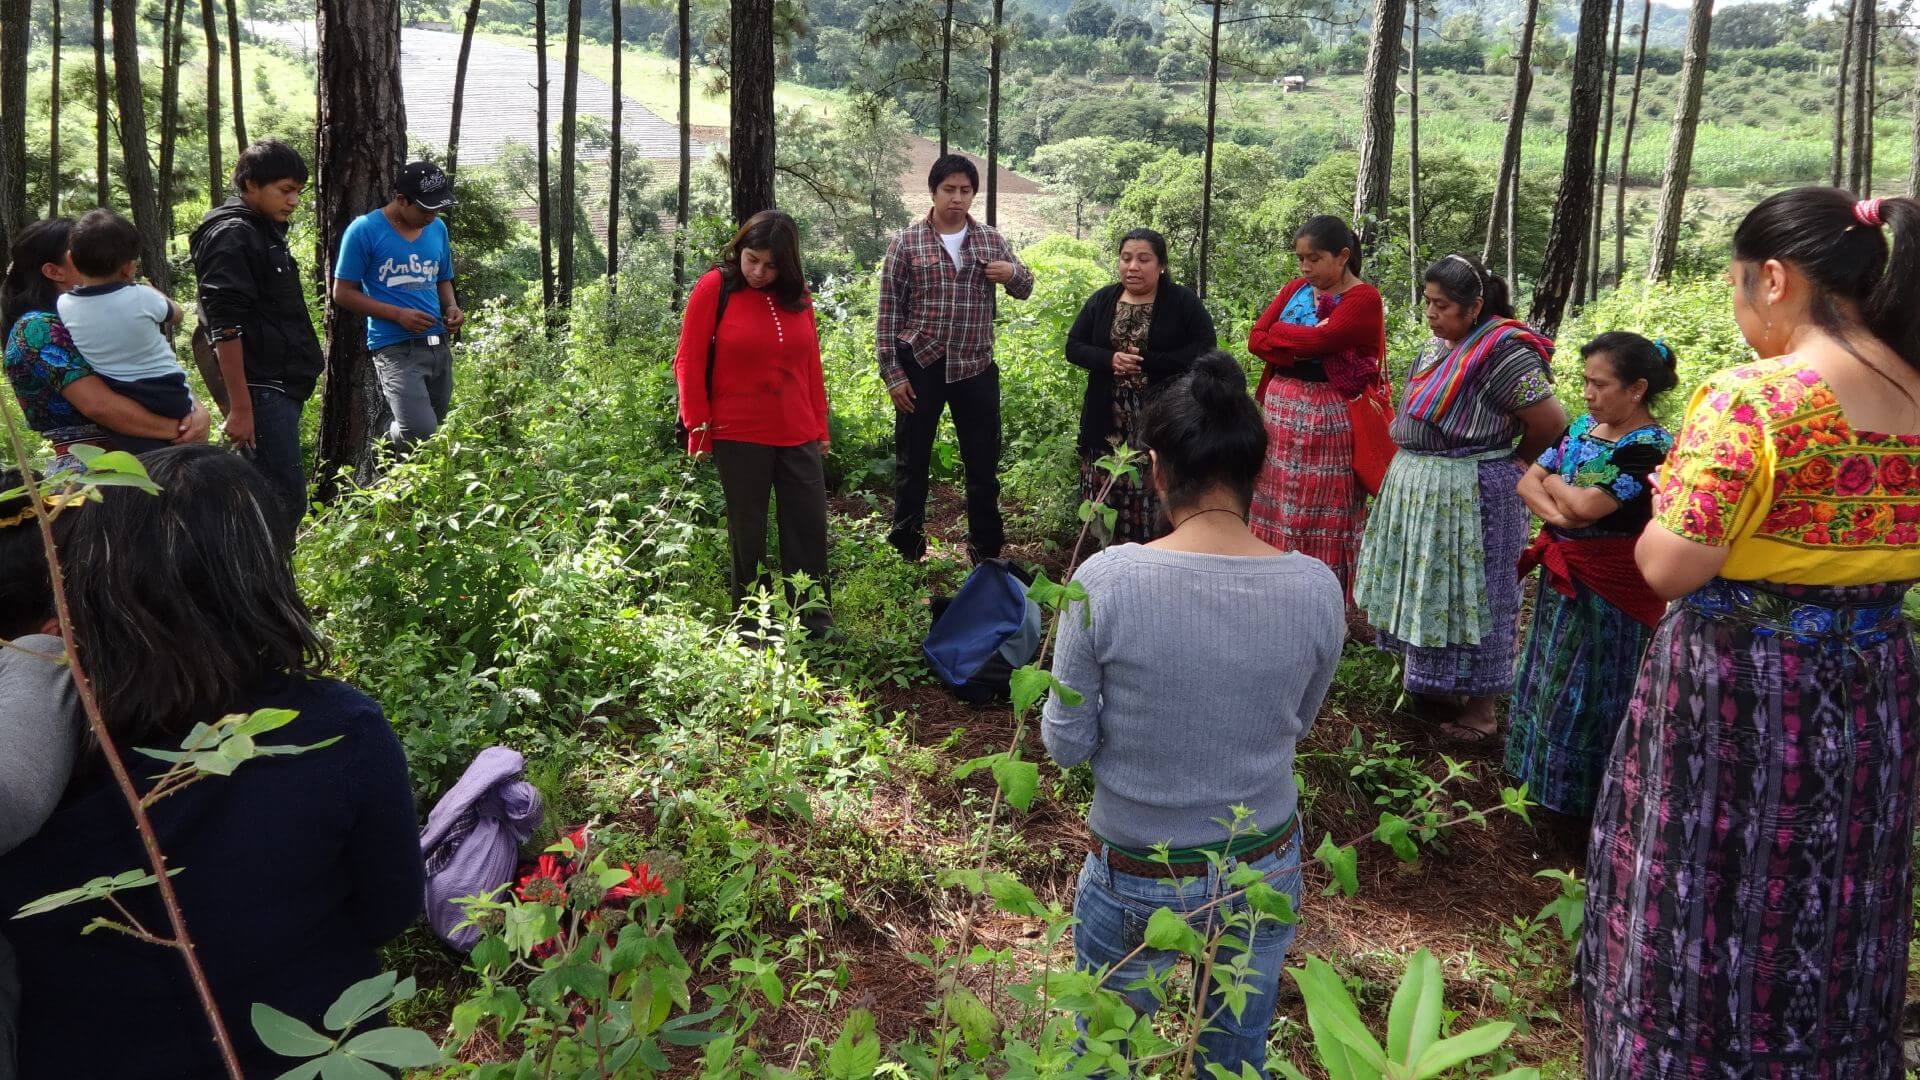 Grupo de personas de comunidades y Pueblos Indígenas de Guatemala con ropas tradicionales reunidos en un bosque.